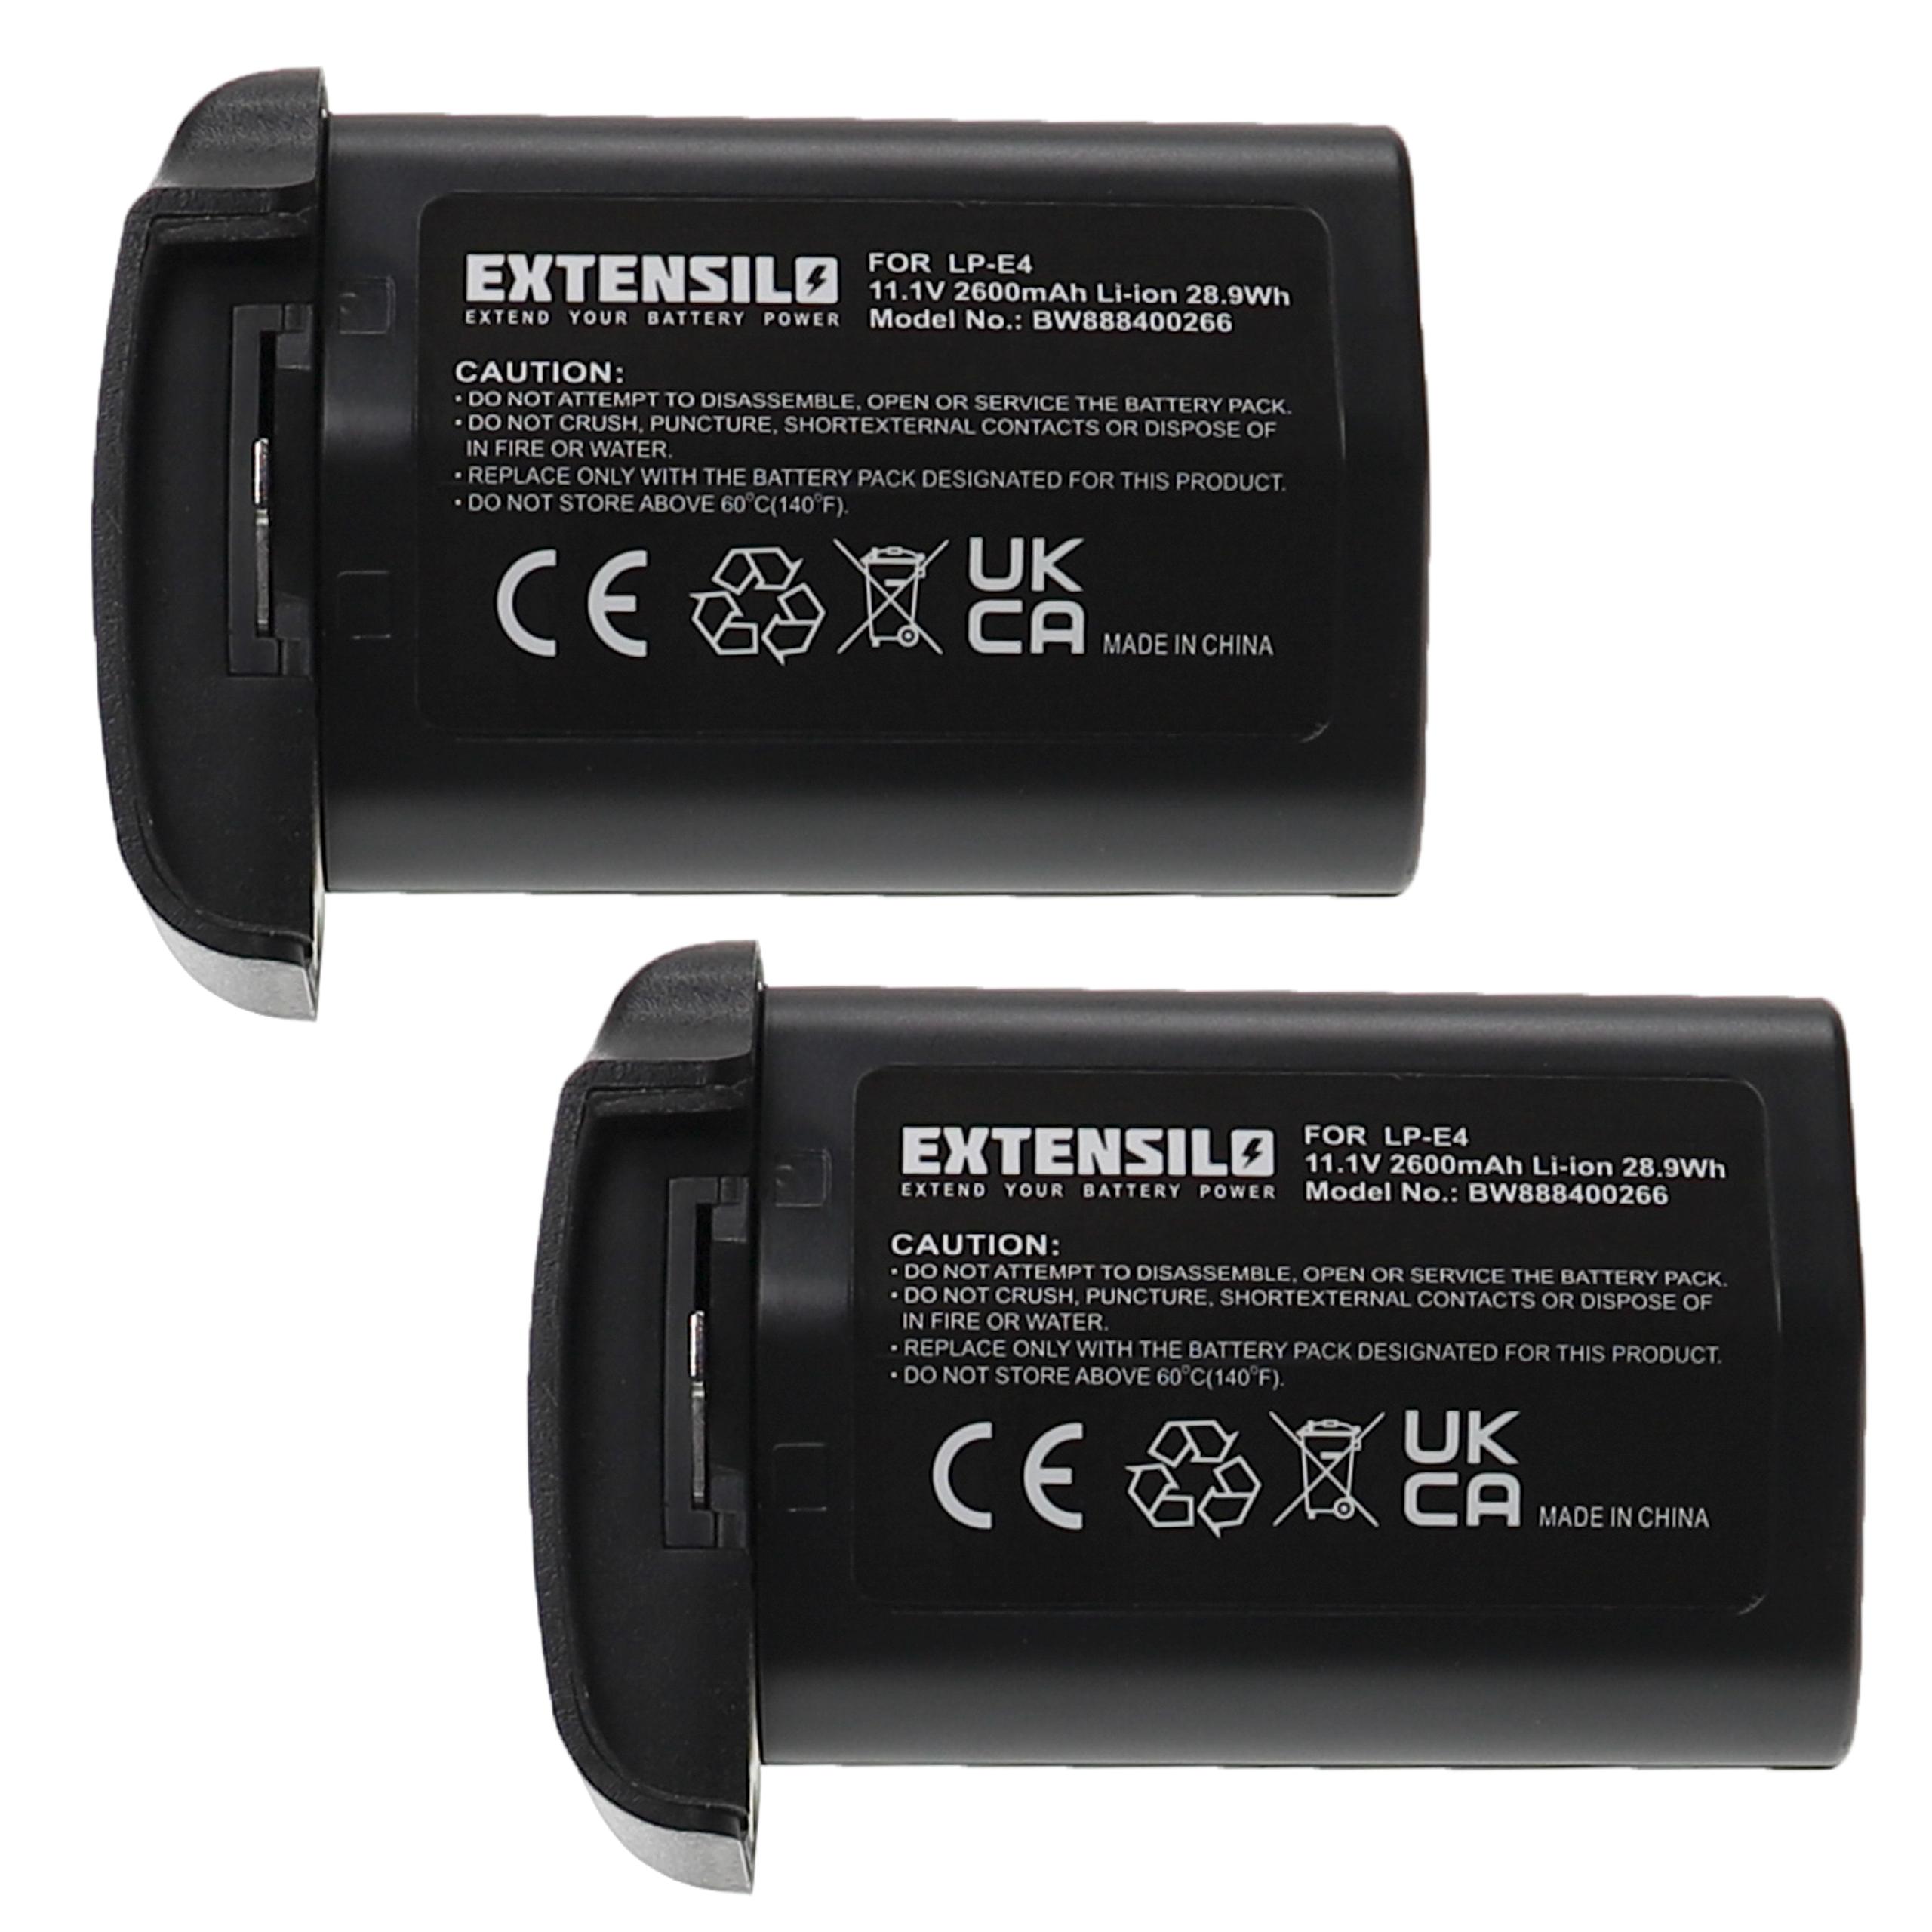 Batteries (2x pièces) remplace Canon LP-E4N, LP-E4 pour appareil photo - 2600mAh 11,1V Li-ion